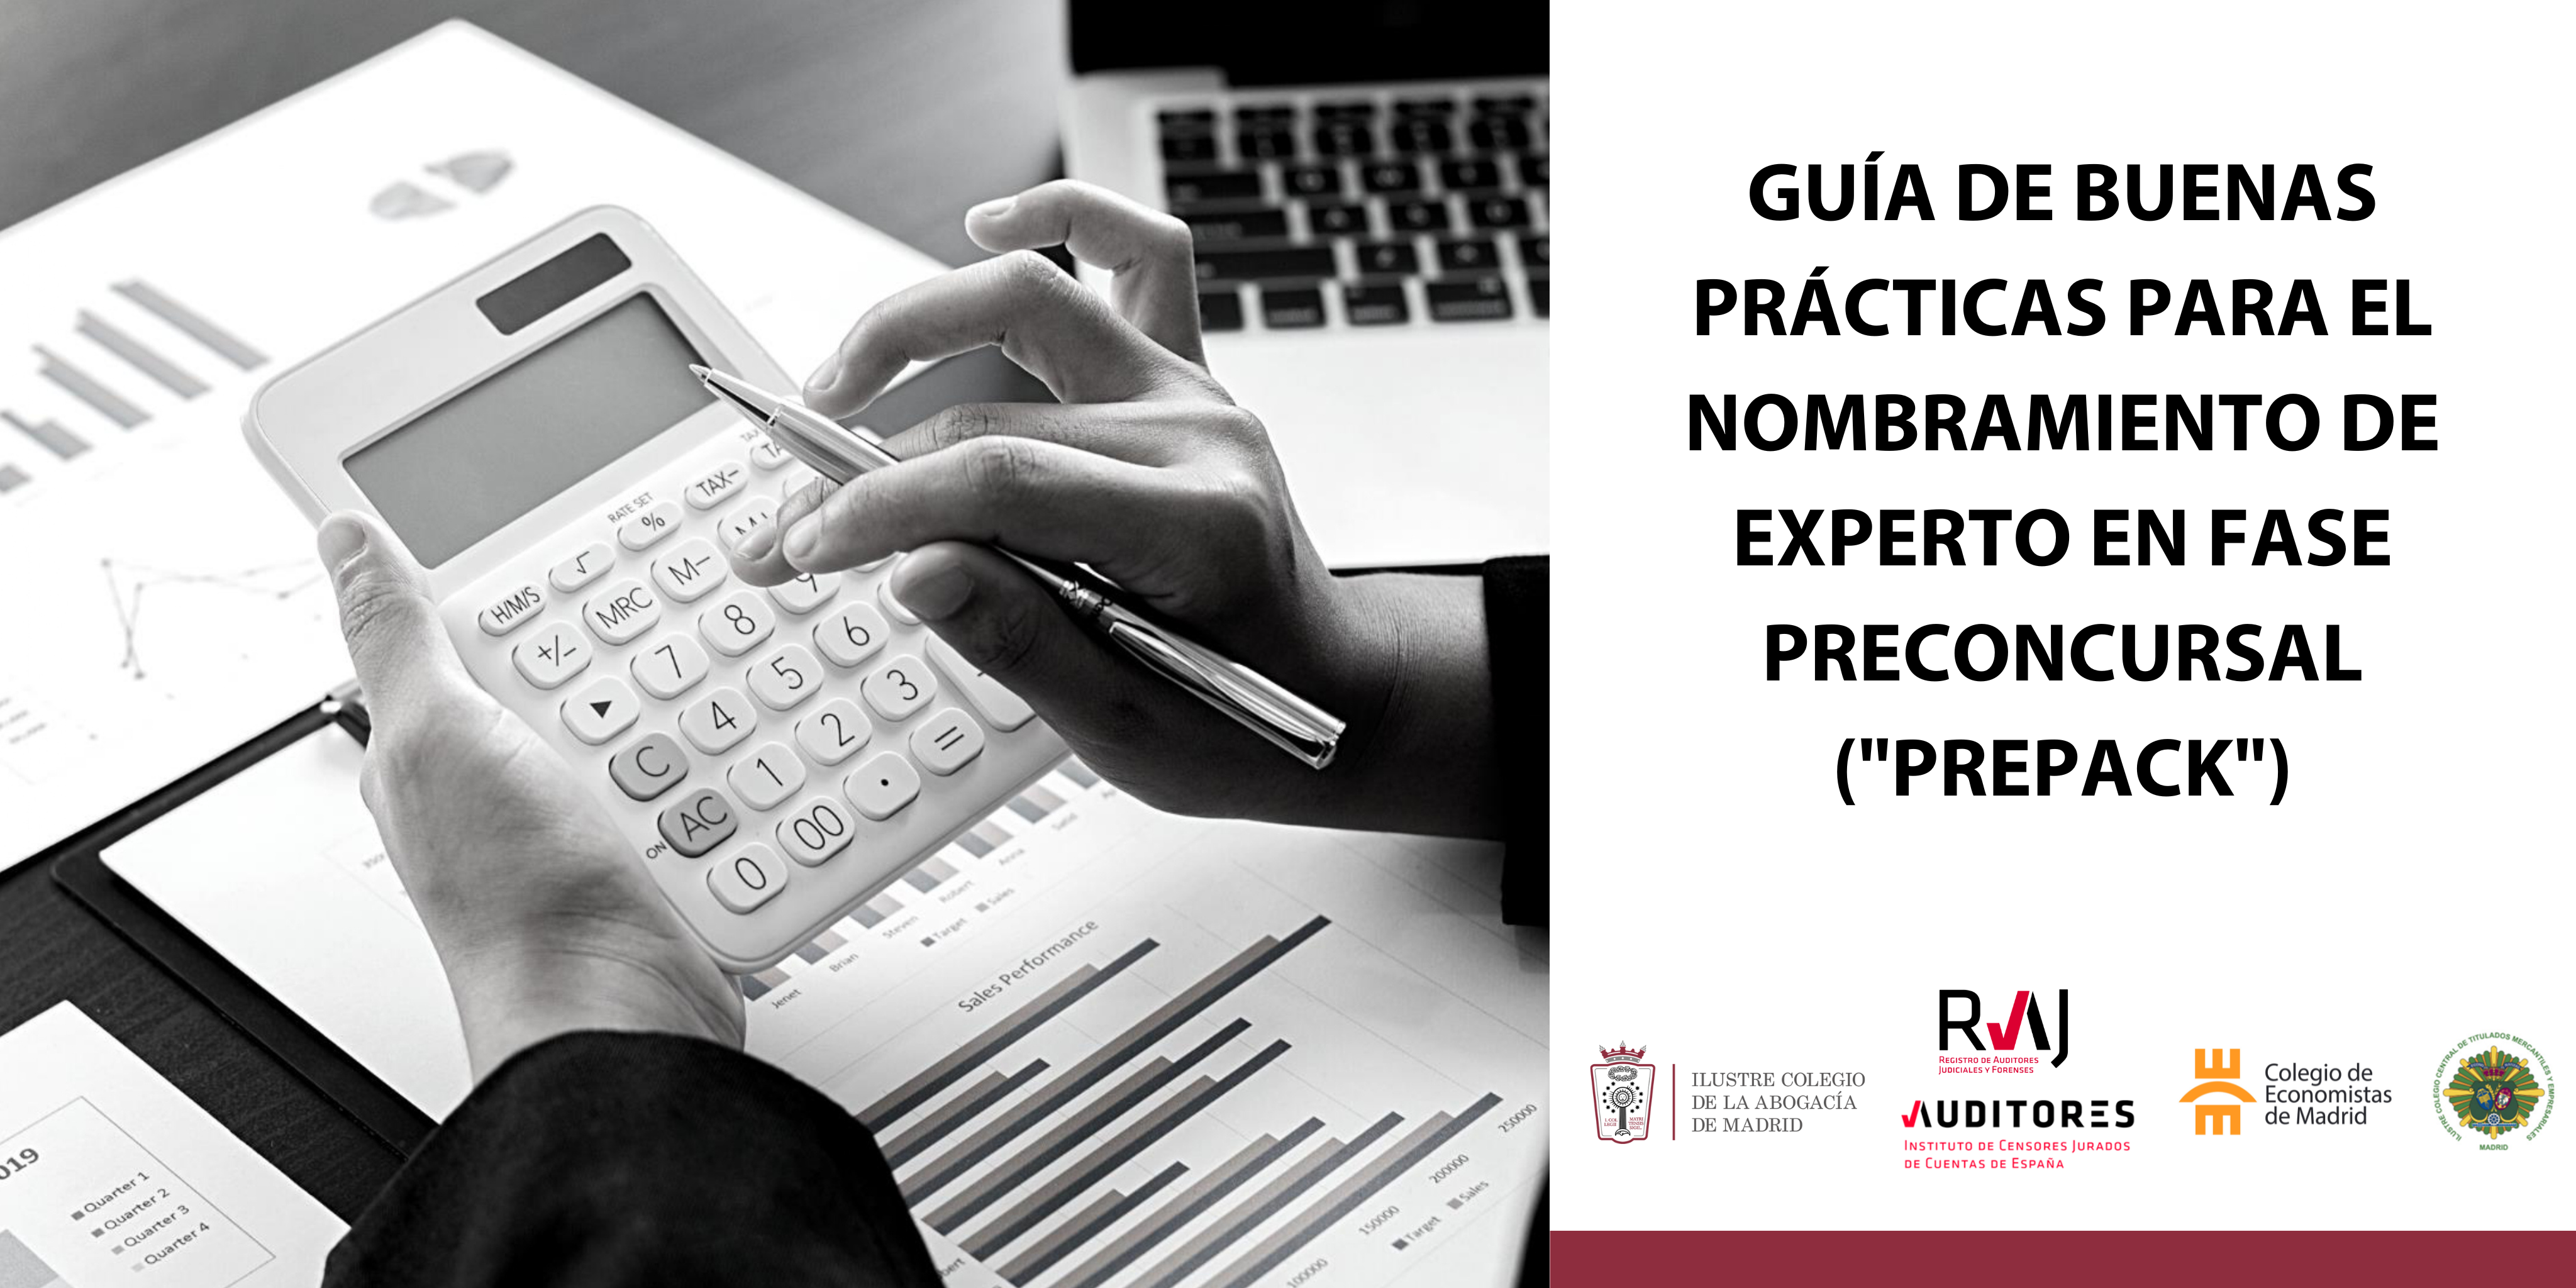 Presentación de la “Guía de buenas prácticas para el nombramiento de experto en fase preconcursal (PREPACK)”